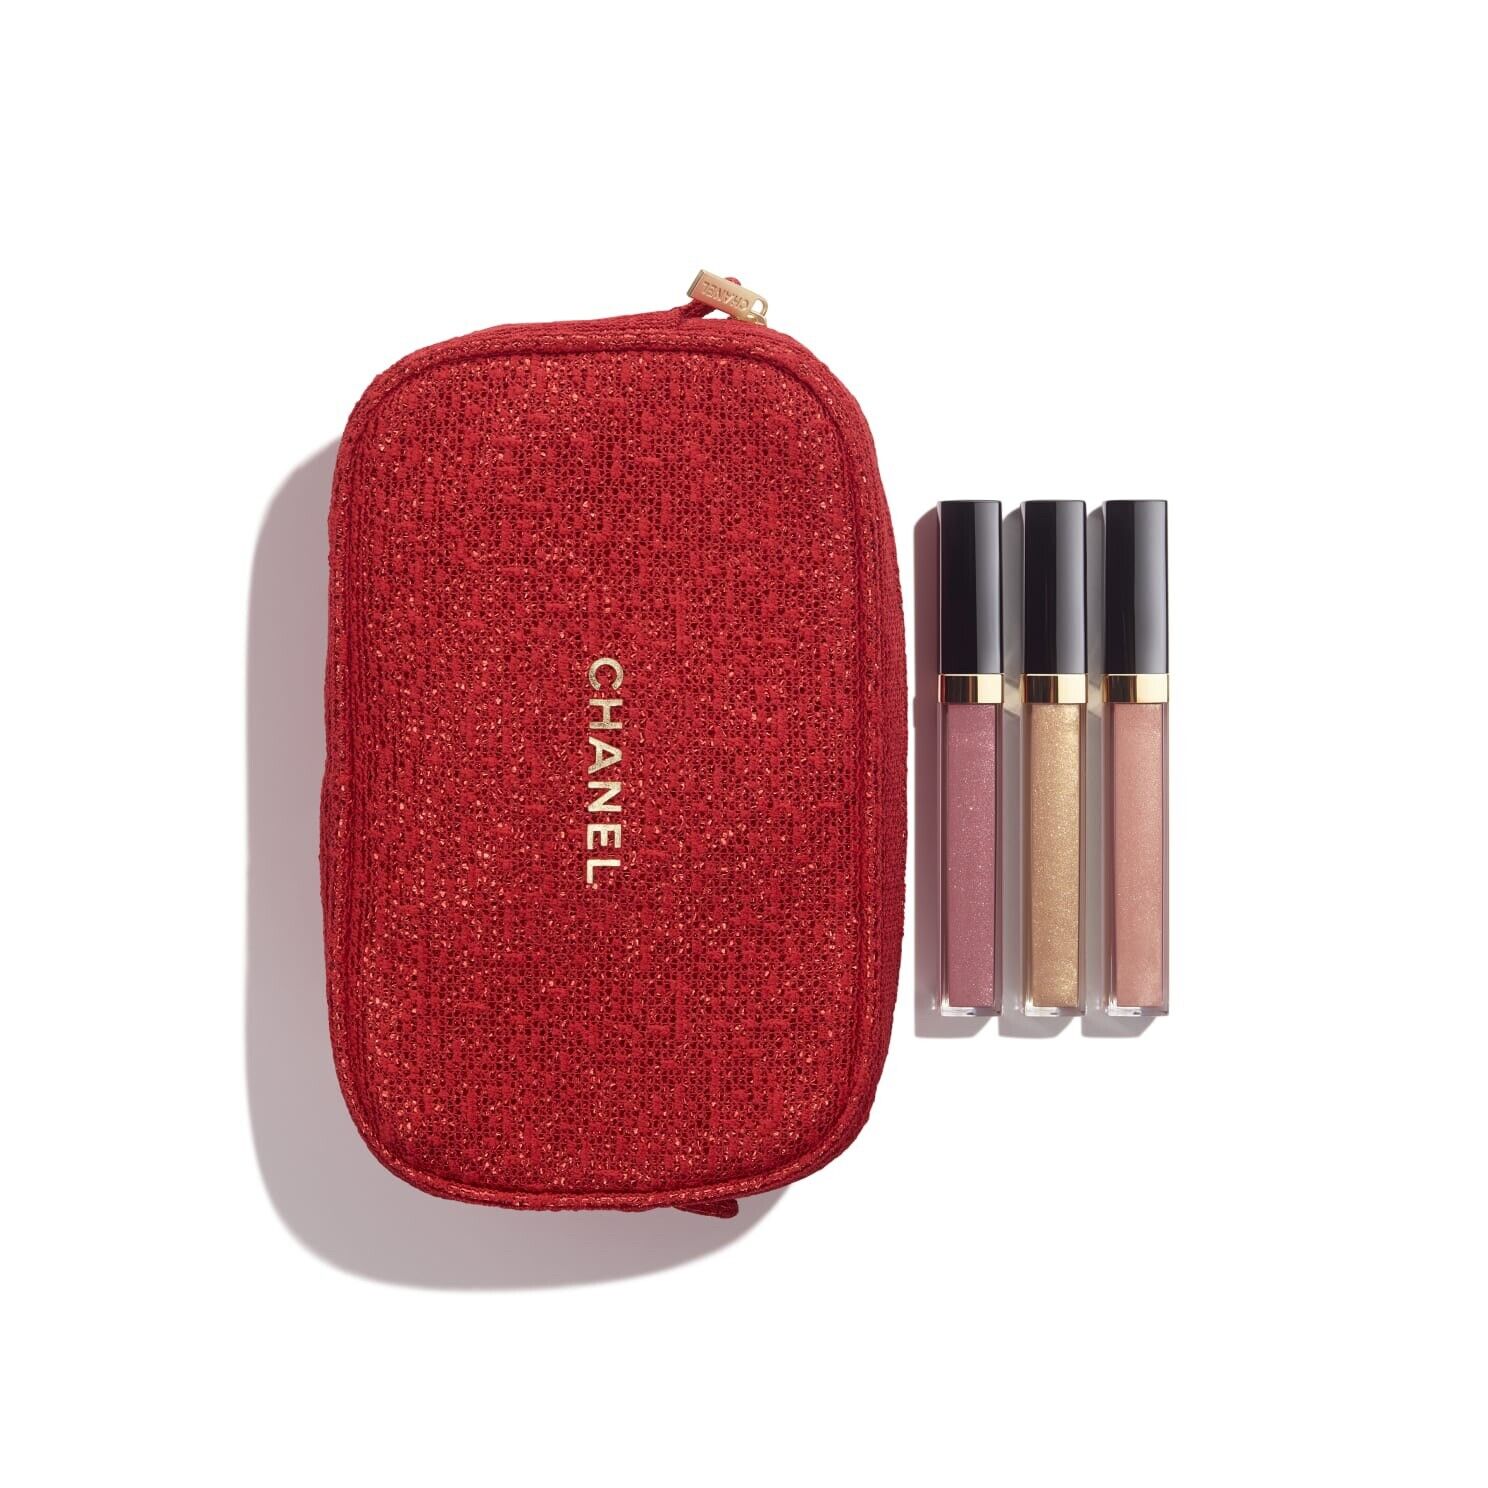 chanel lip gloss set with bag